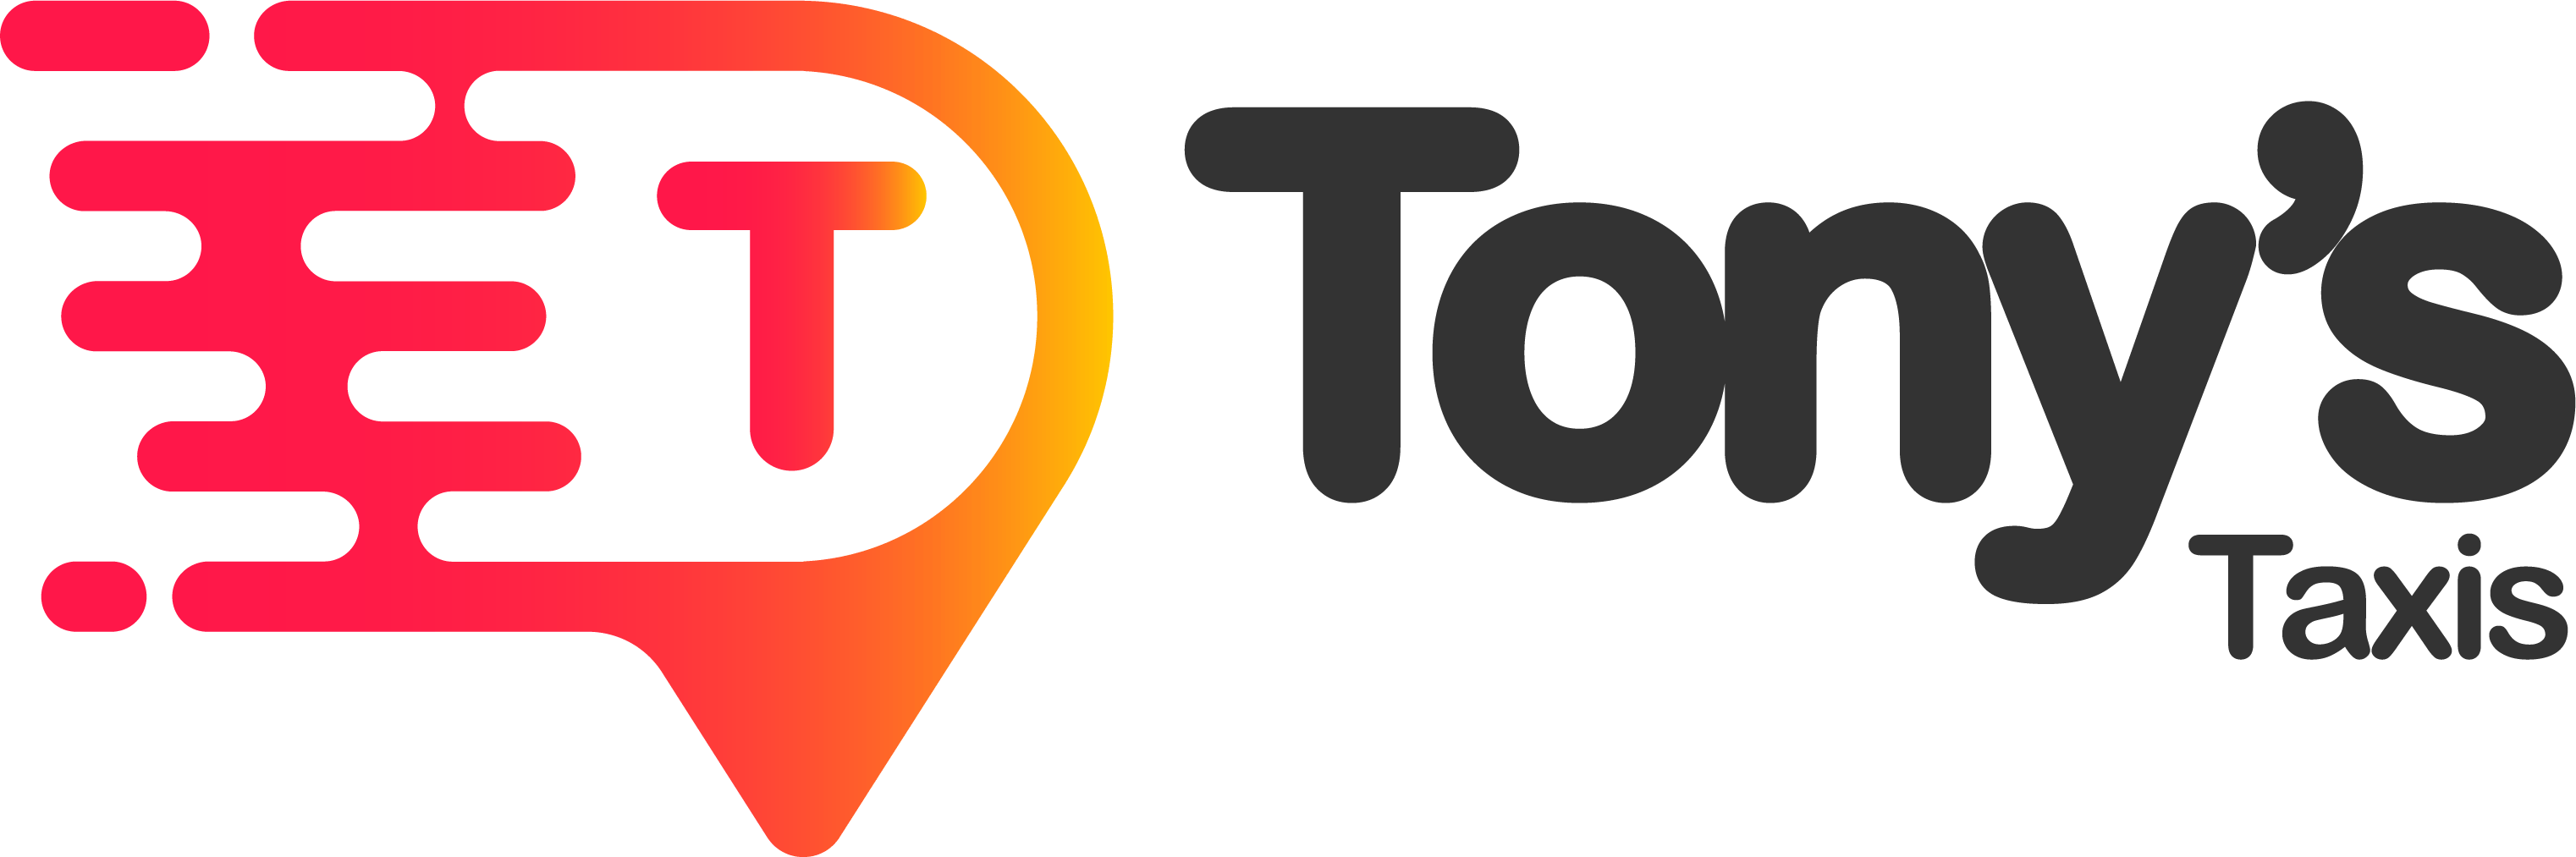 Tony's Logo - Tony's Taxis